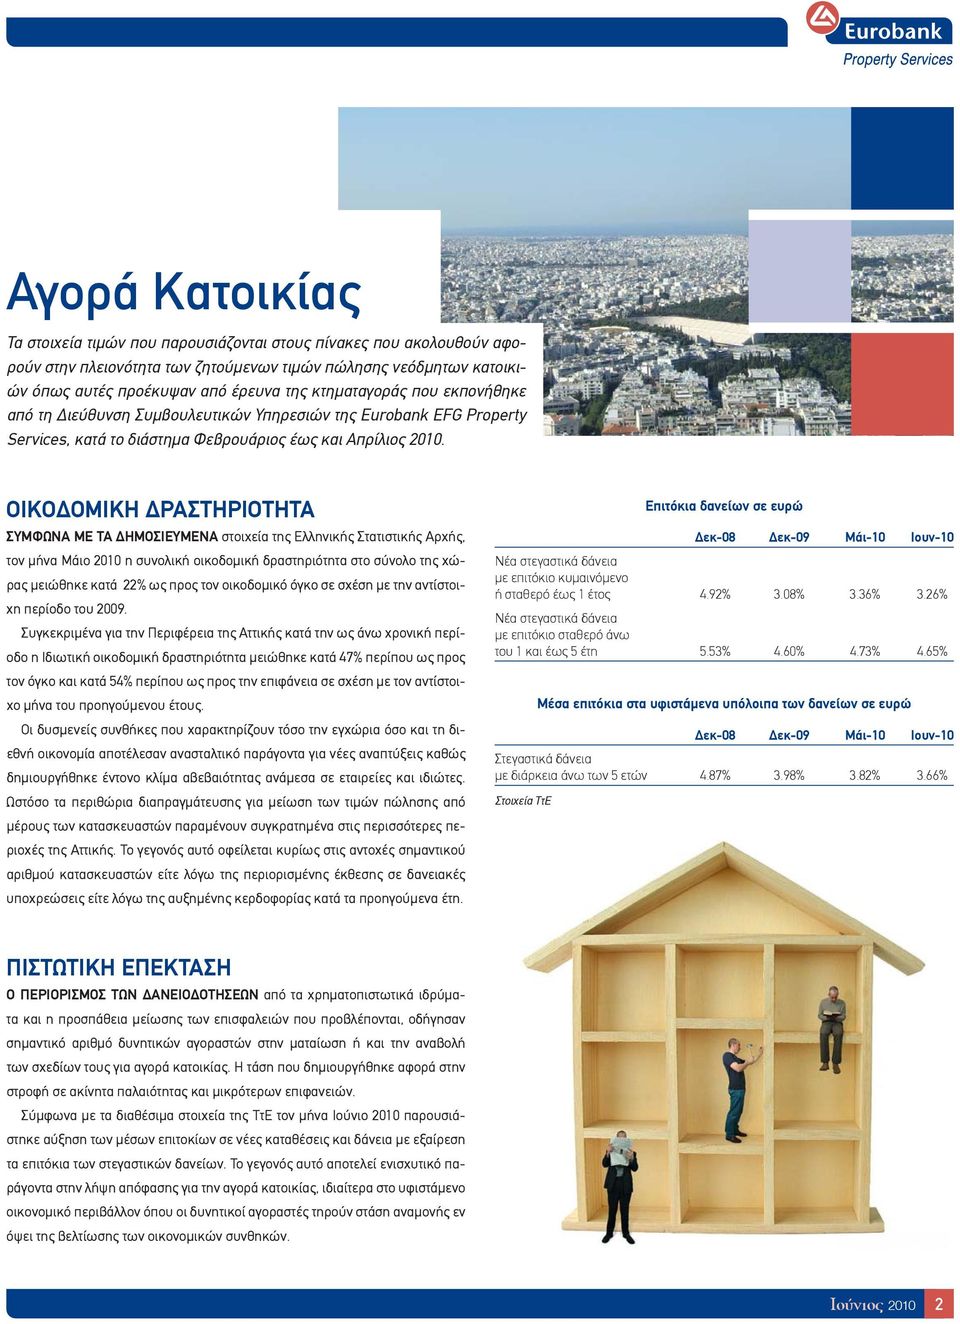 ΟΙΚΟΔΟΜΙΚΗ ΔΡΑΣΤΗΡΙΟΤΗΤΑ ΣΥΜΦΩΝΑ ΜΕ ΤΑ ΔΗΜΟΣΙΕΥΜΕΝΑ στοιχεία της Ελληνικής Στατιστικής Αρχής, τον μήνα Μάιο 2010 η συνολική οικοδομική δραστηριότητα στο σύνολο της χώρας μειώθηκε κατά 22% ως προς τον